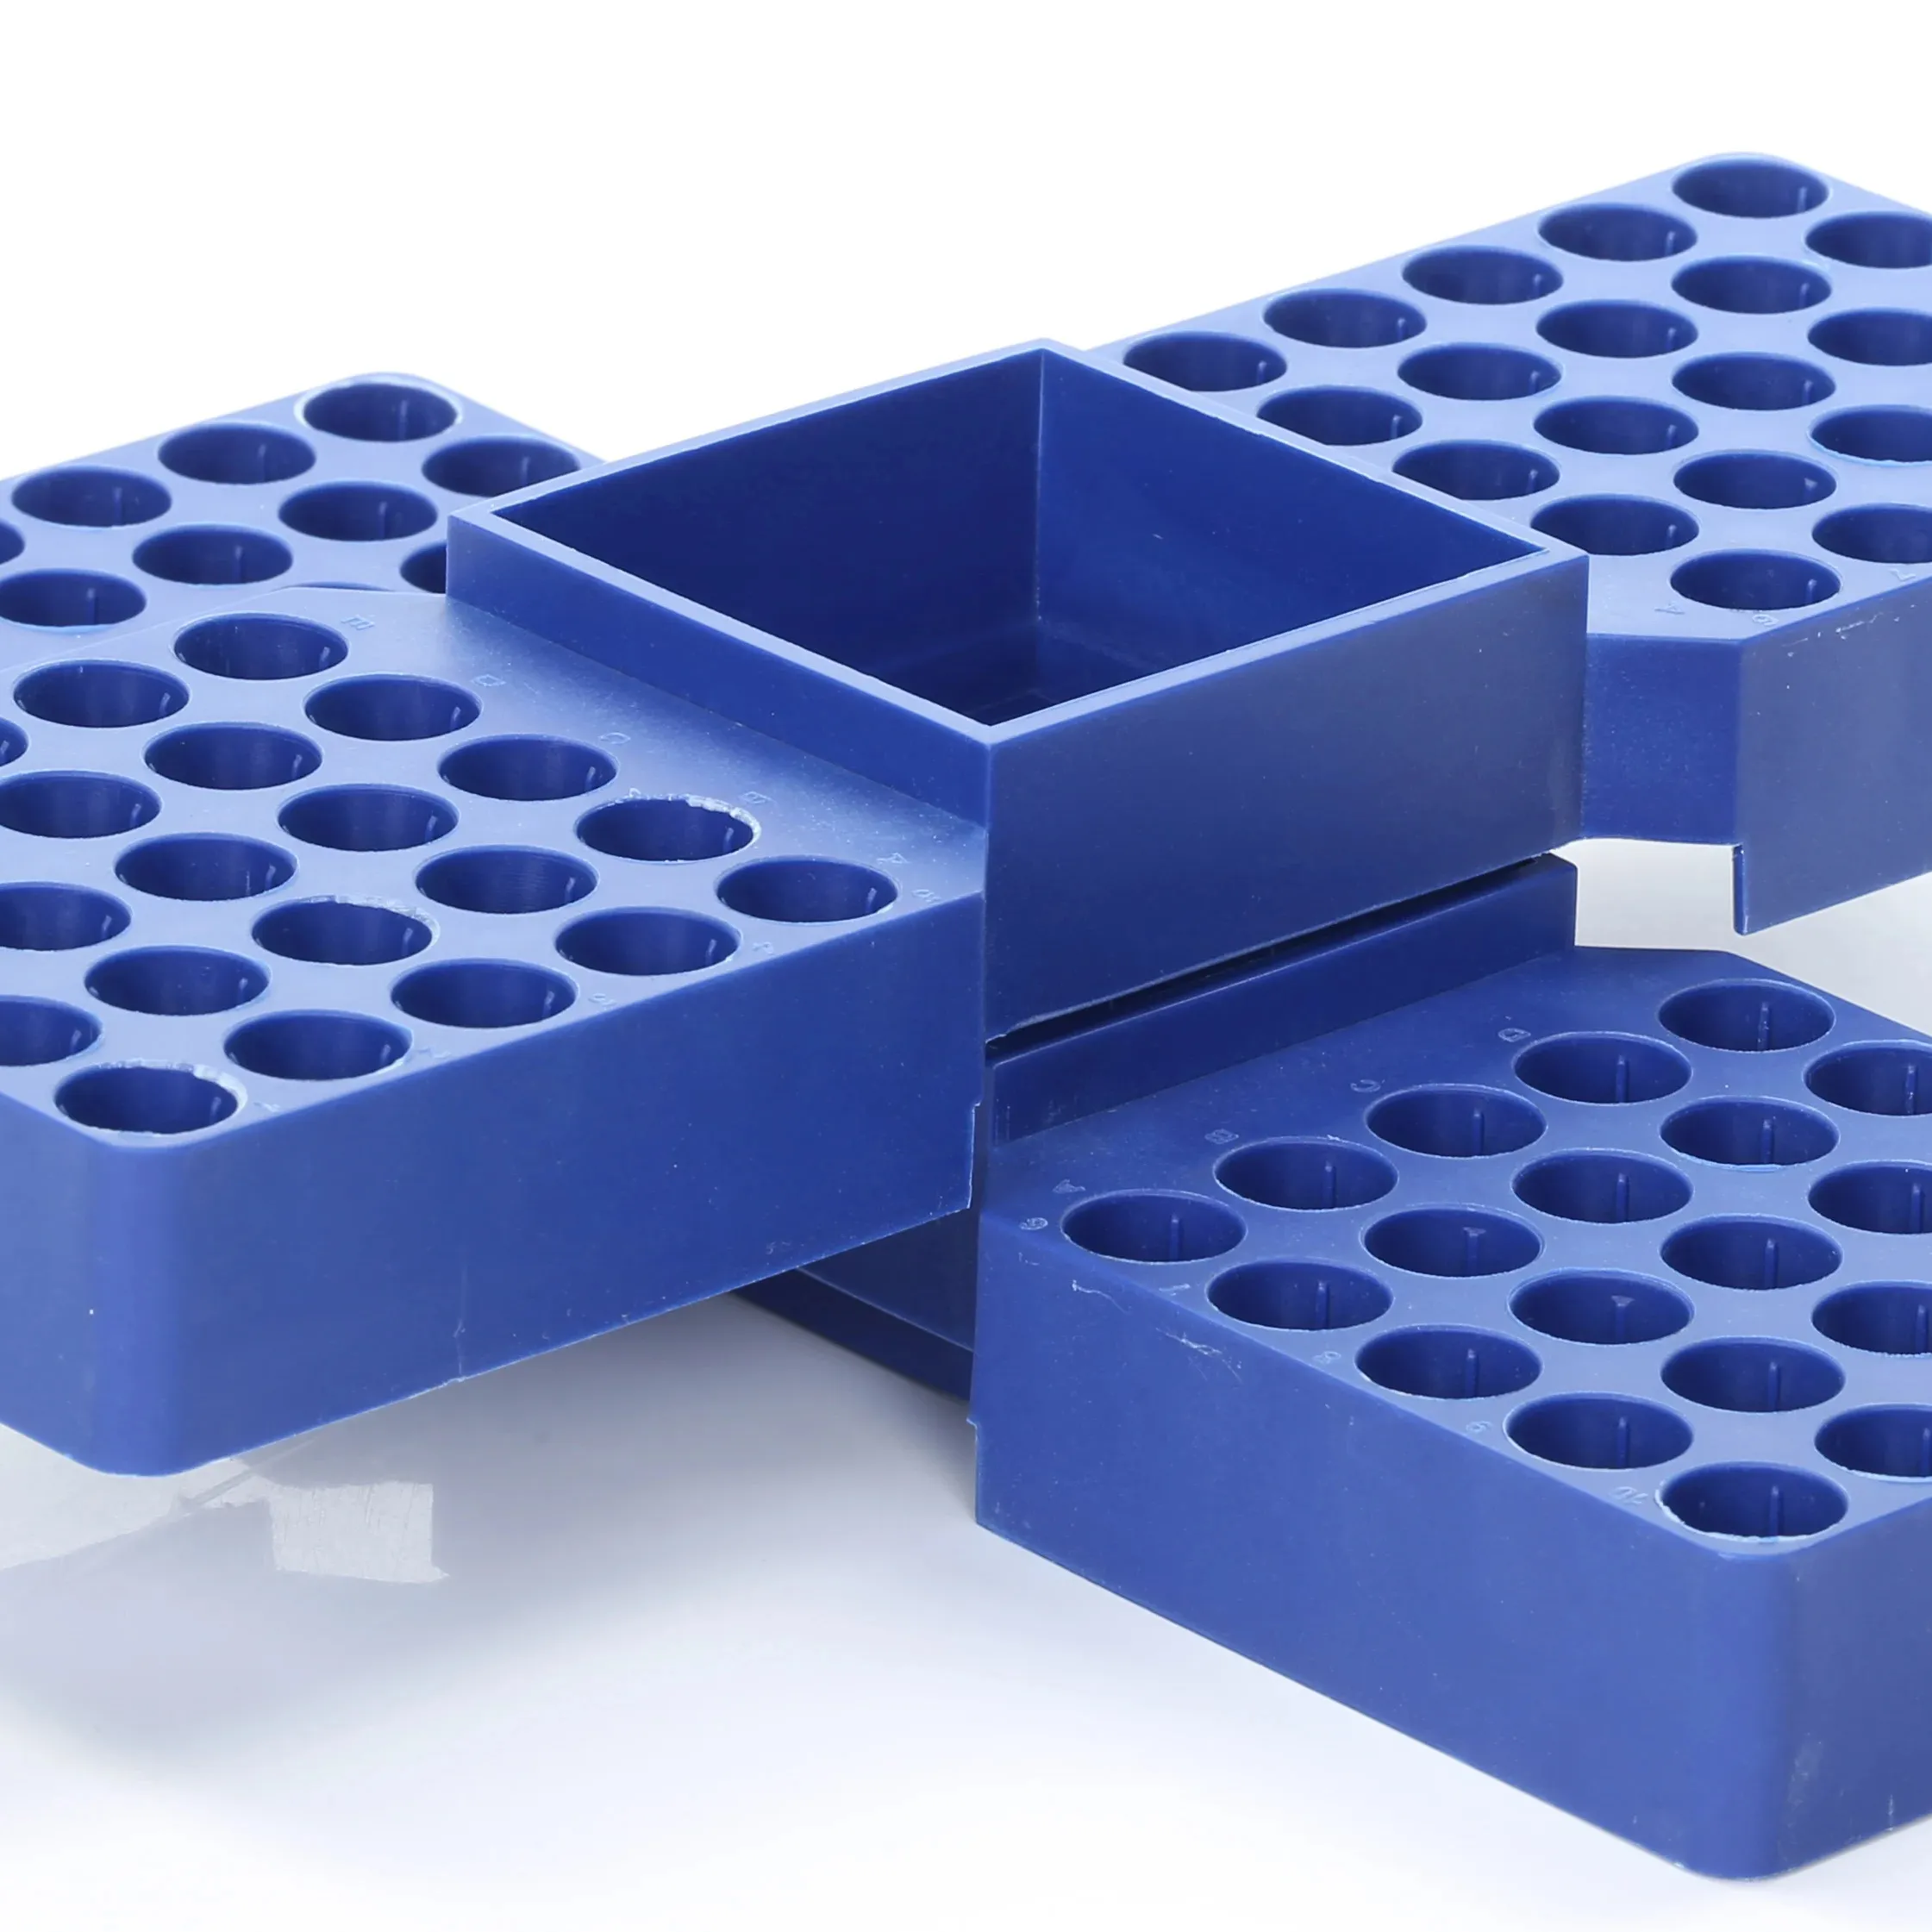 Estante para viales azul innovador para uso en laboratorio con compartimento de almacenamiento de 5*10 agujeros que se puede apilar vertical o paralelo